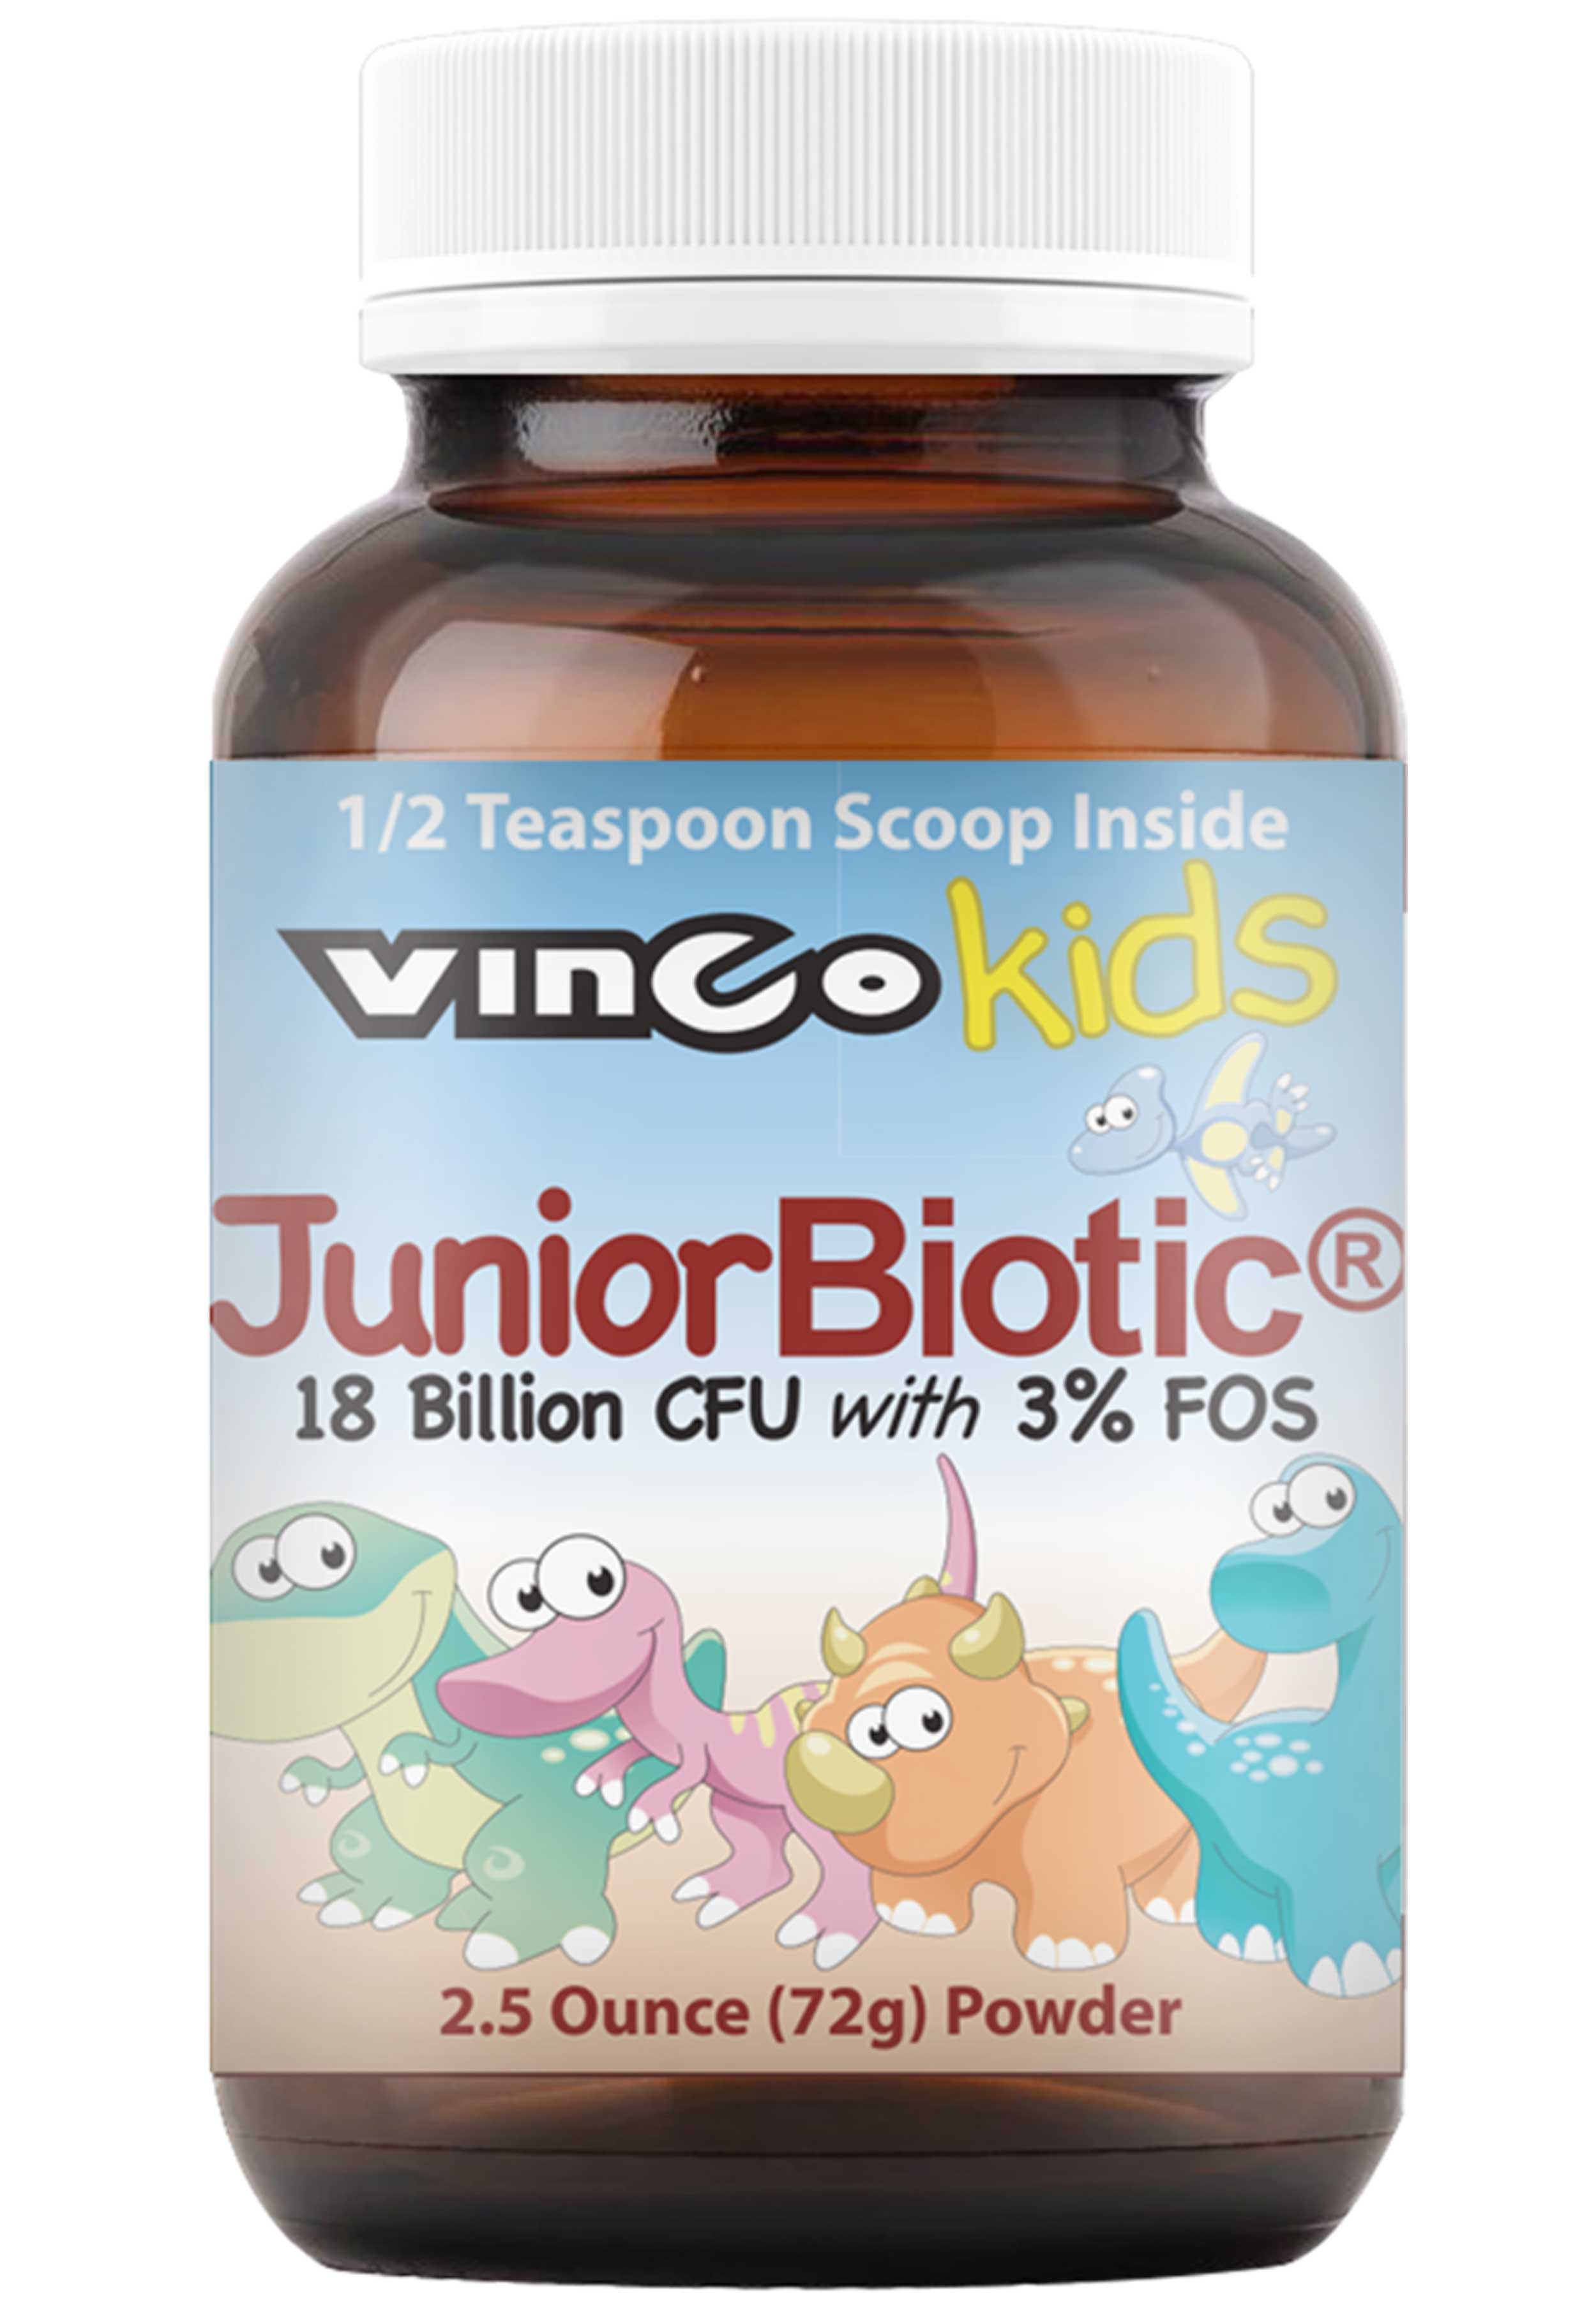 Vinco Kids JuniorBiotic®